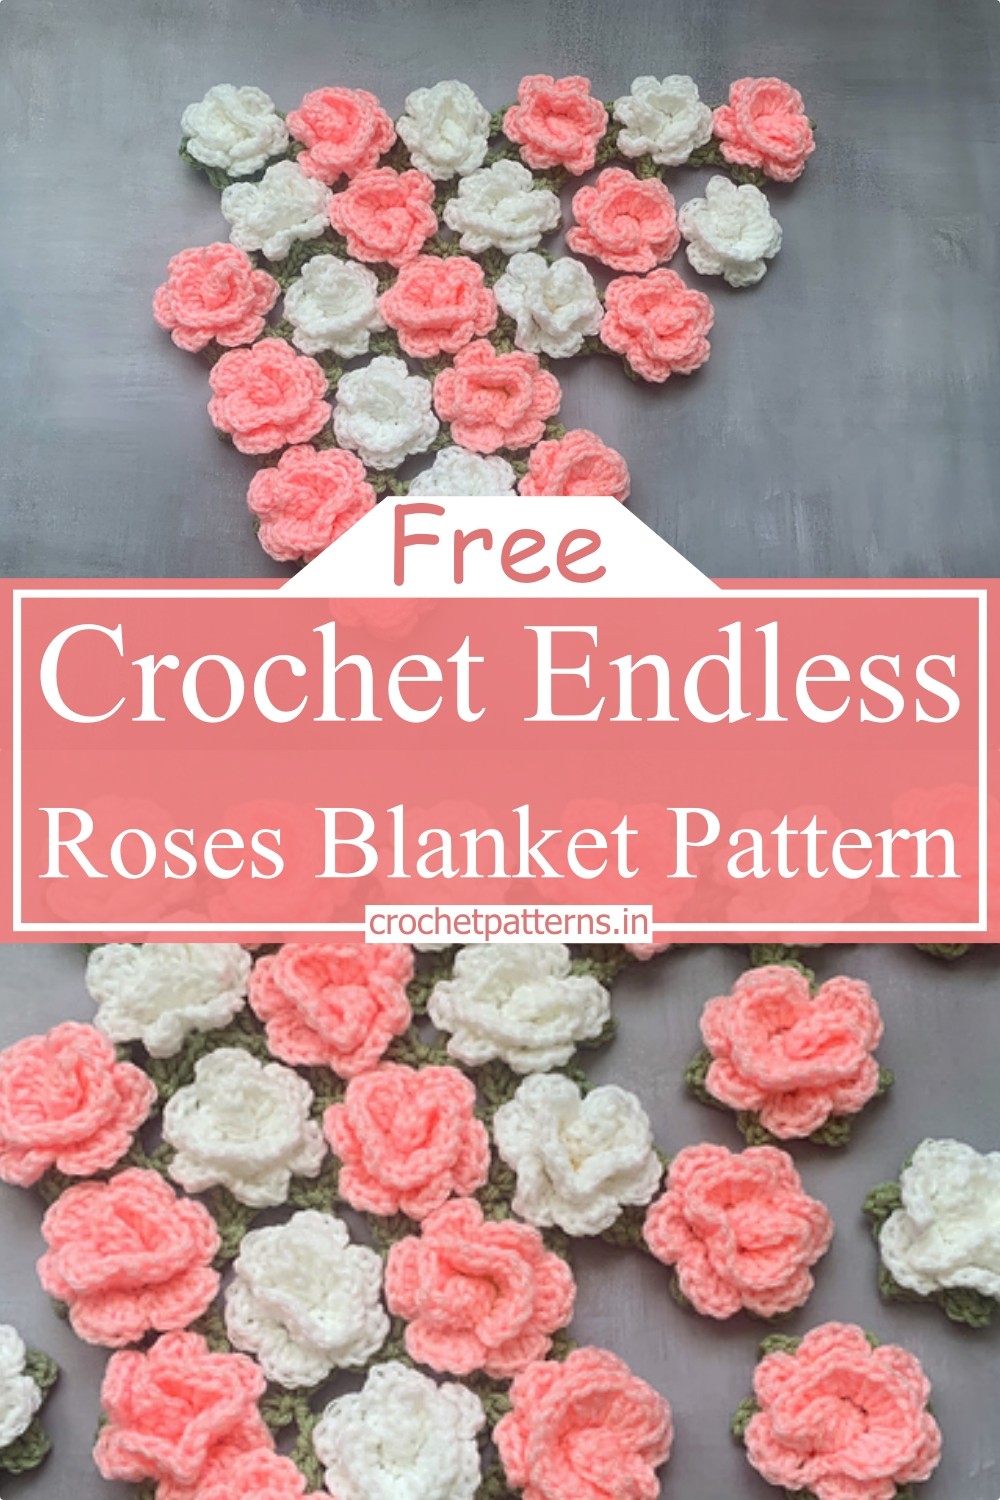 Crochet Endless Roses Blanket Pattern